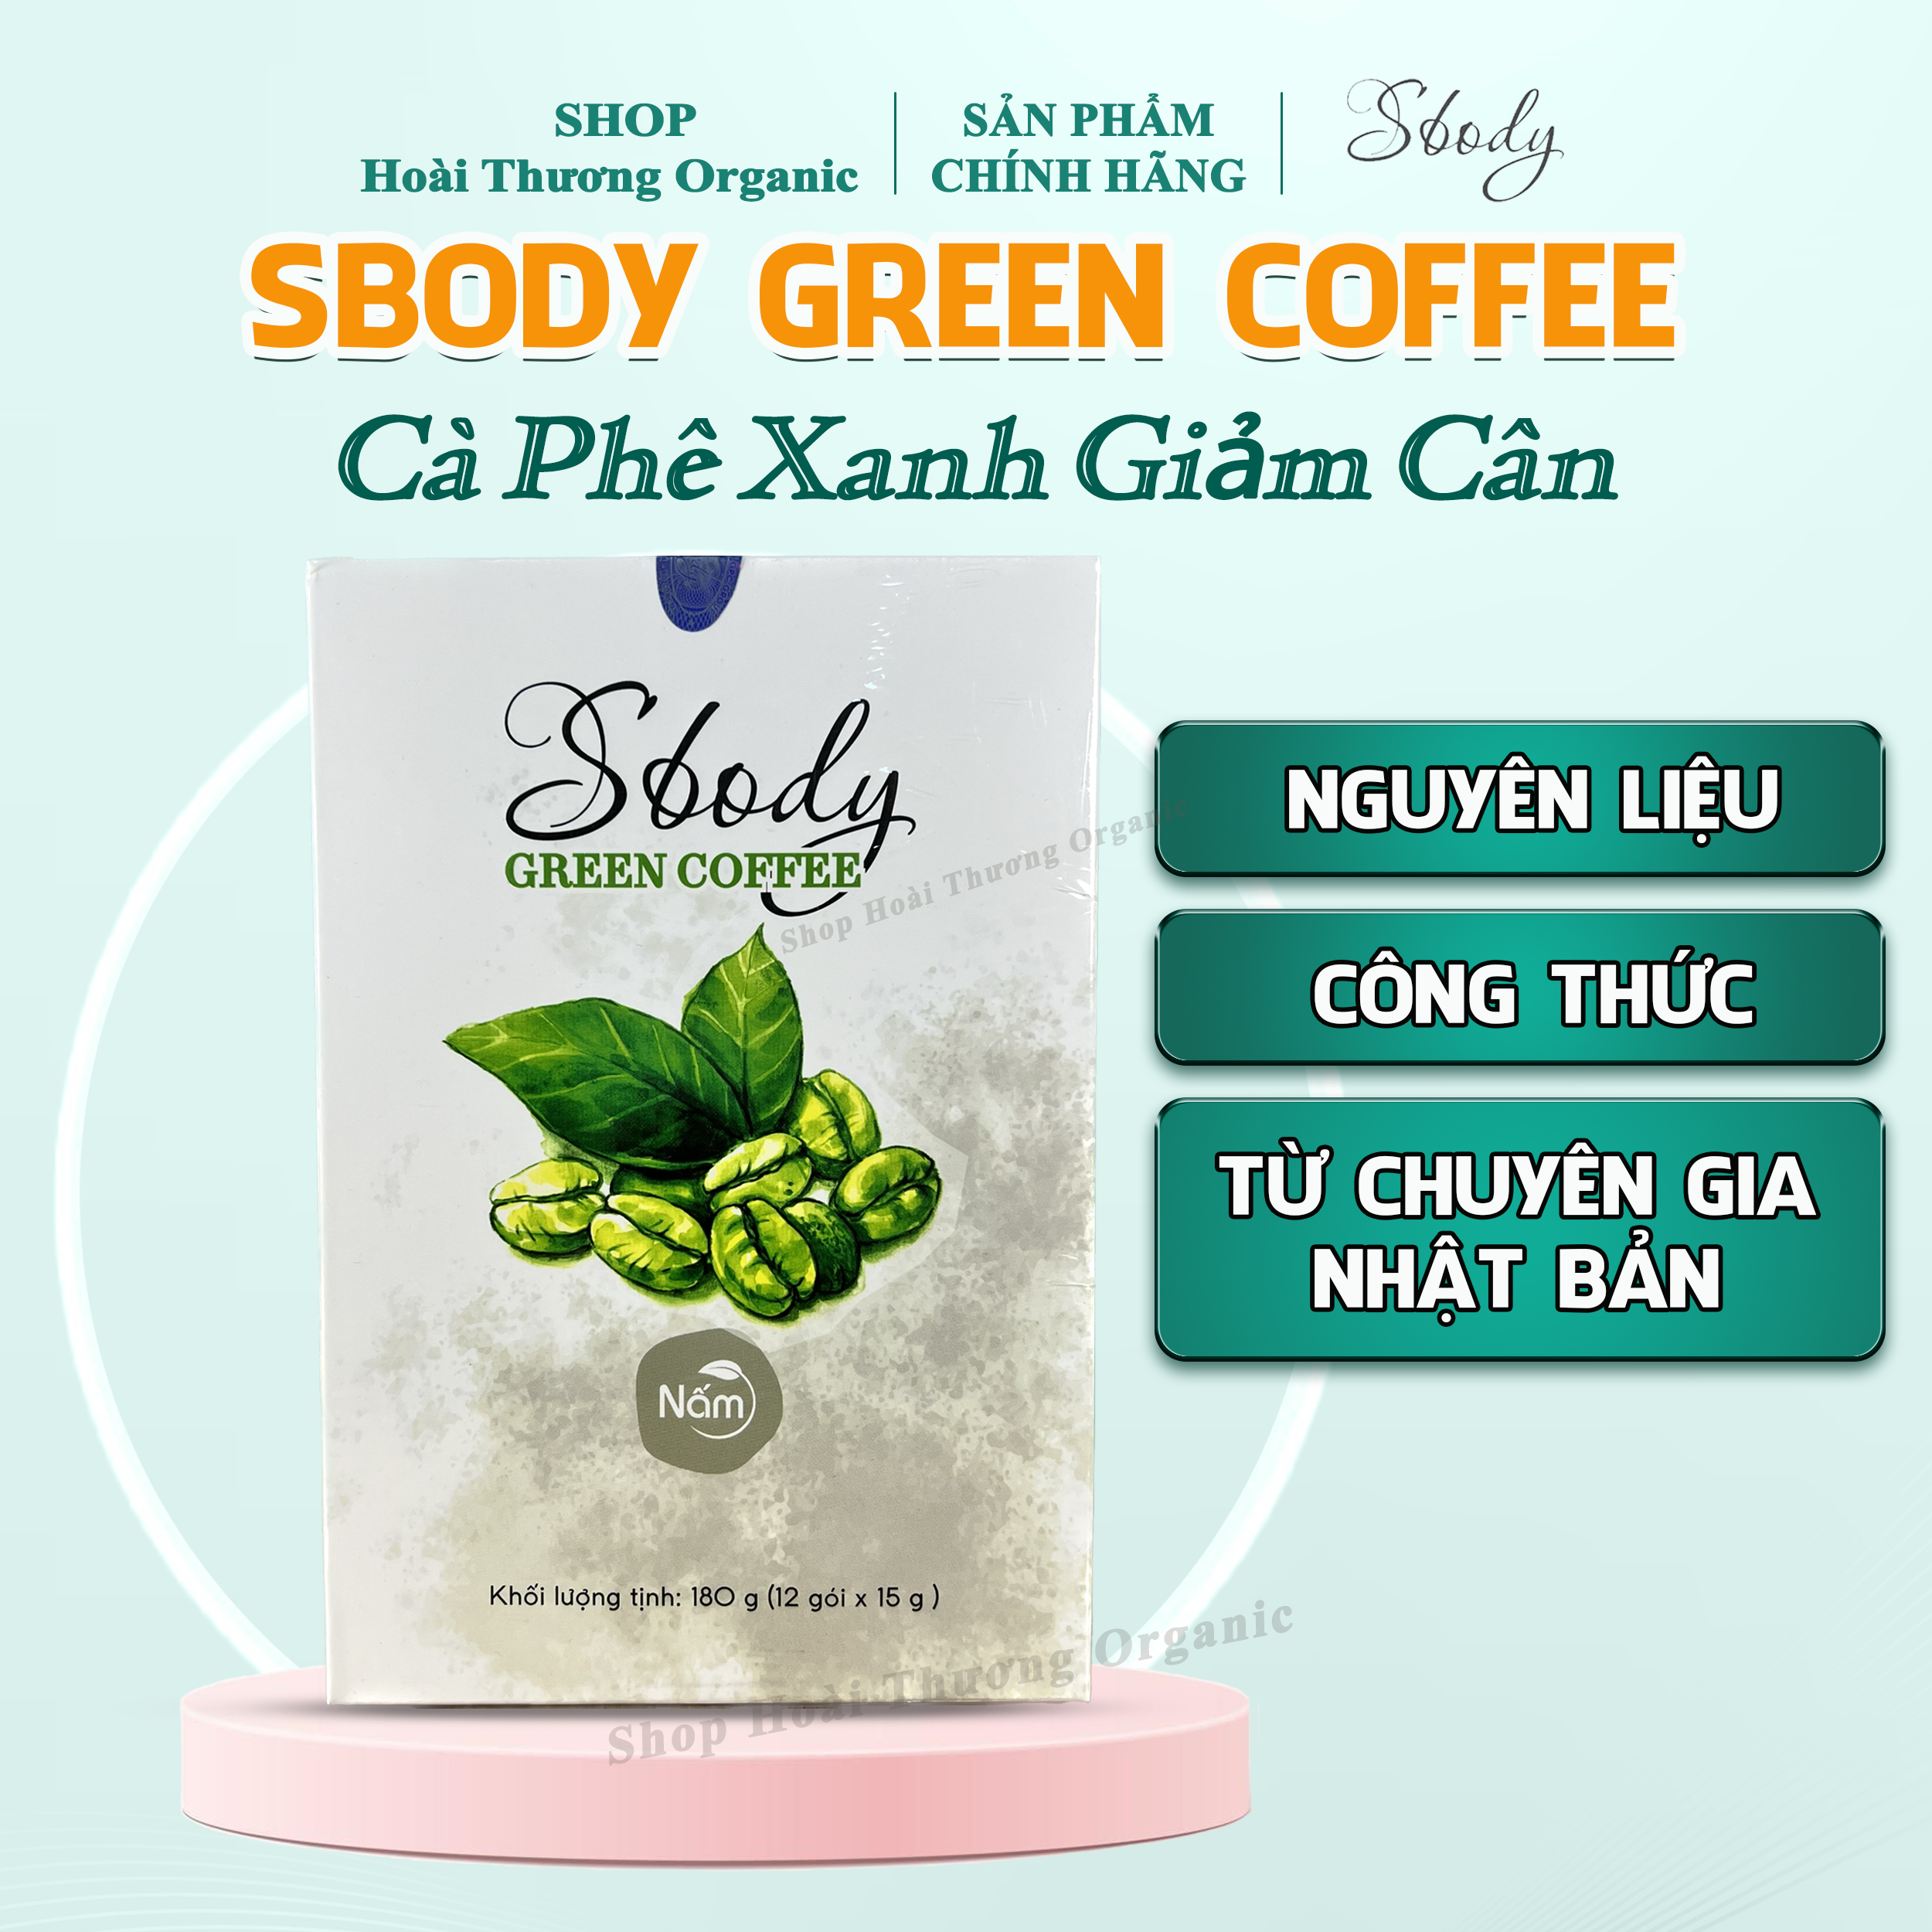 Nấm Hỗ Trợ Giảm Cân Sbody Green Coffee - 100% Thiên Nhiên (Hộp 12 gói /180G) Đốt Mỡ và Kiểm Soát Cân Nặng - Cà Phê Xanh Hỗ Trợ Giảm Cân AN TOÀN & HIỆU QUẢ!